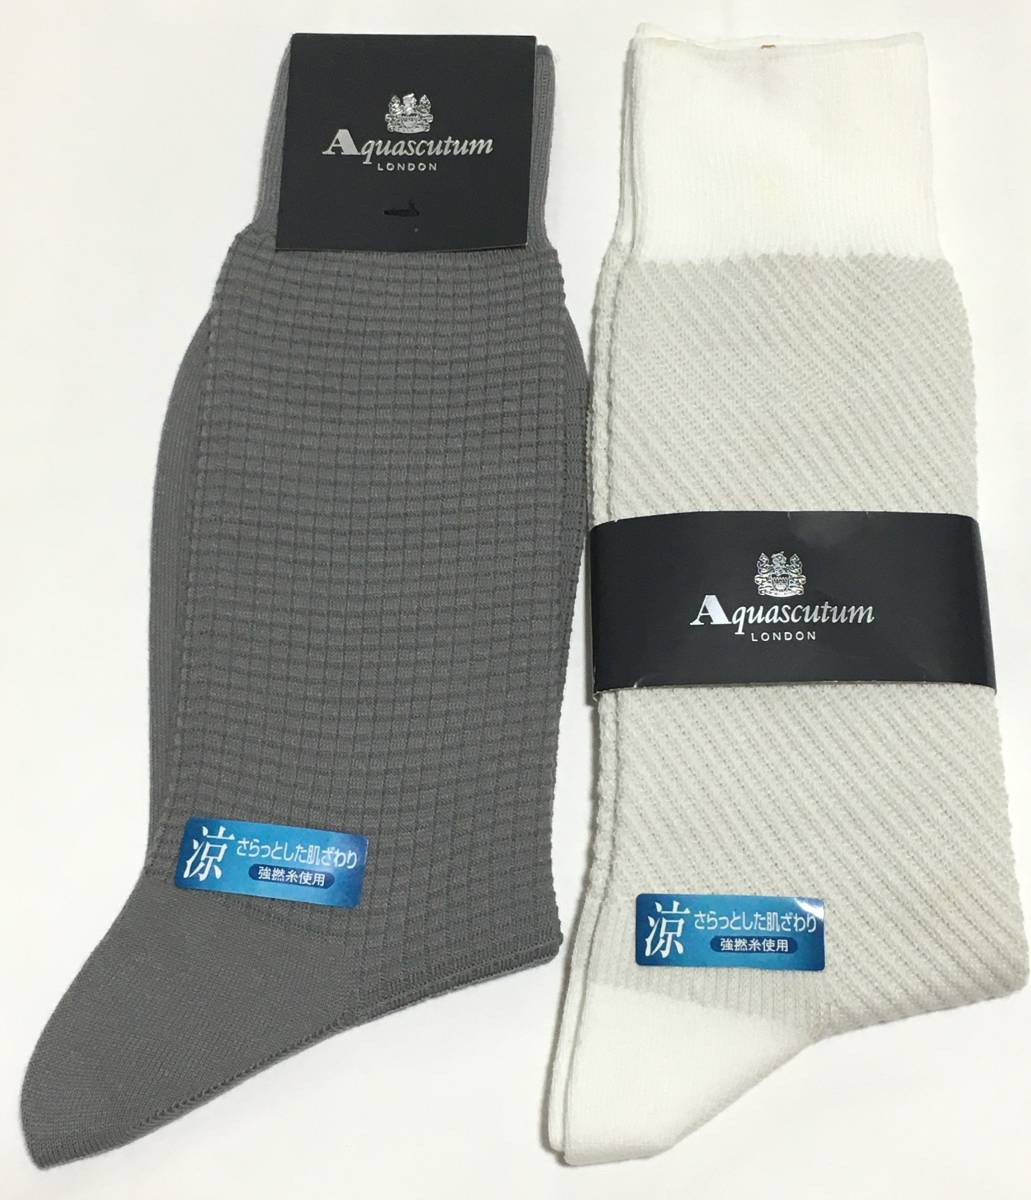 Aquascutum носки носки сделано в Японии 2 пара комплект ....24-26cm,25-27cm Aquascutum Rena un